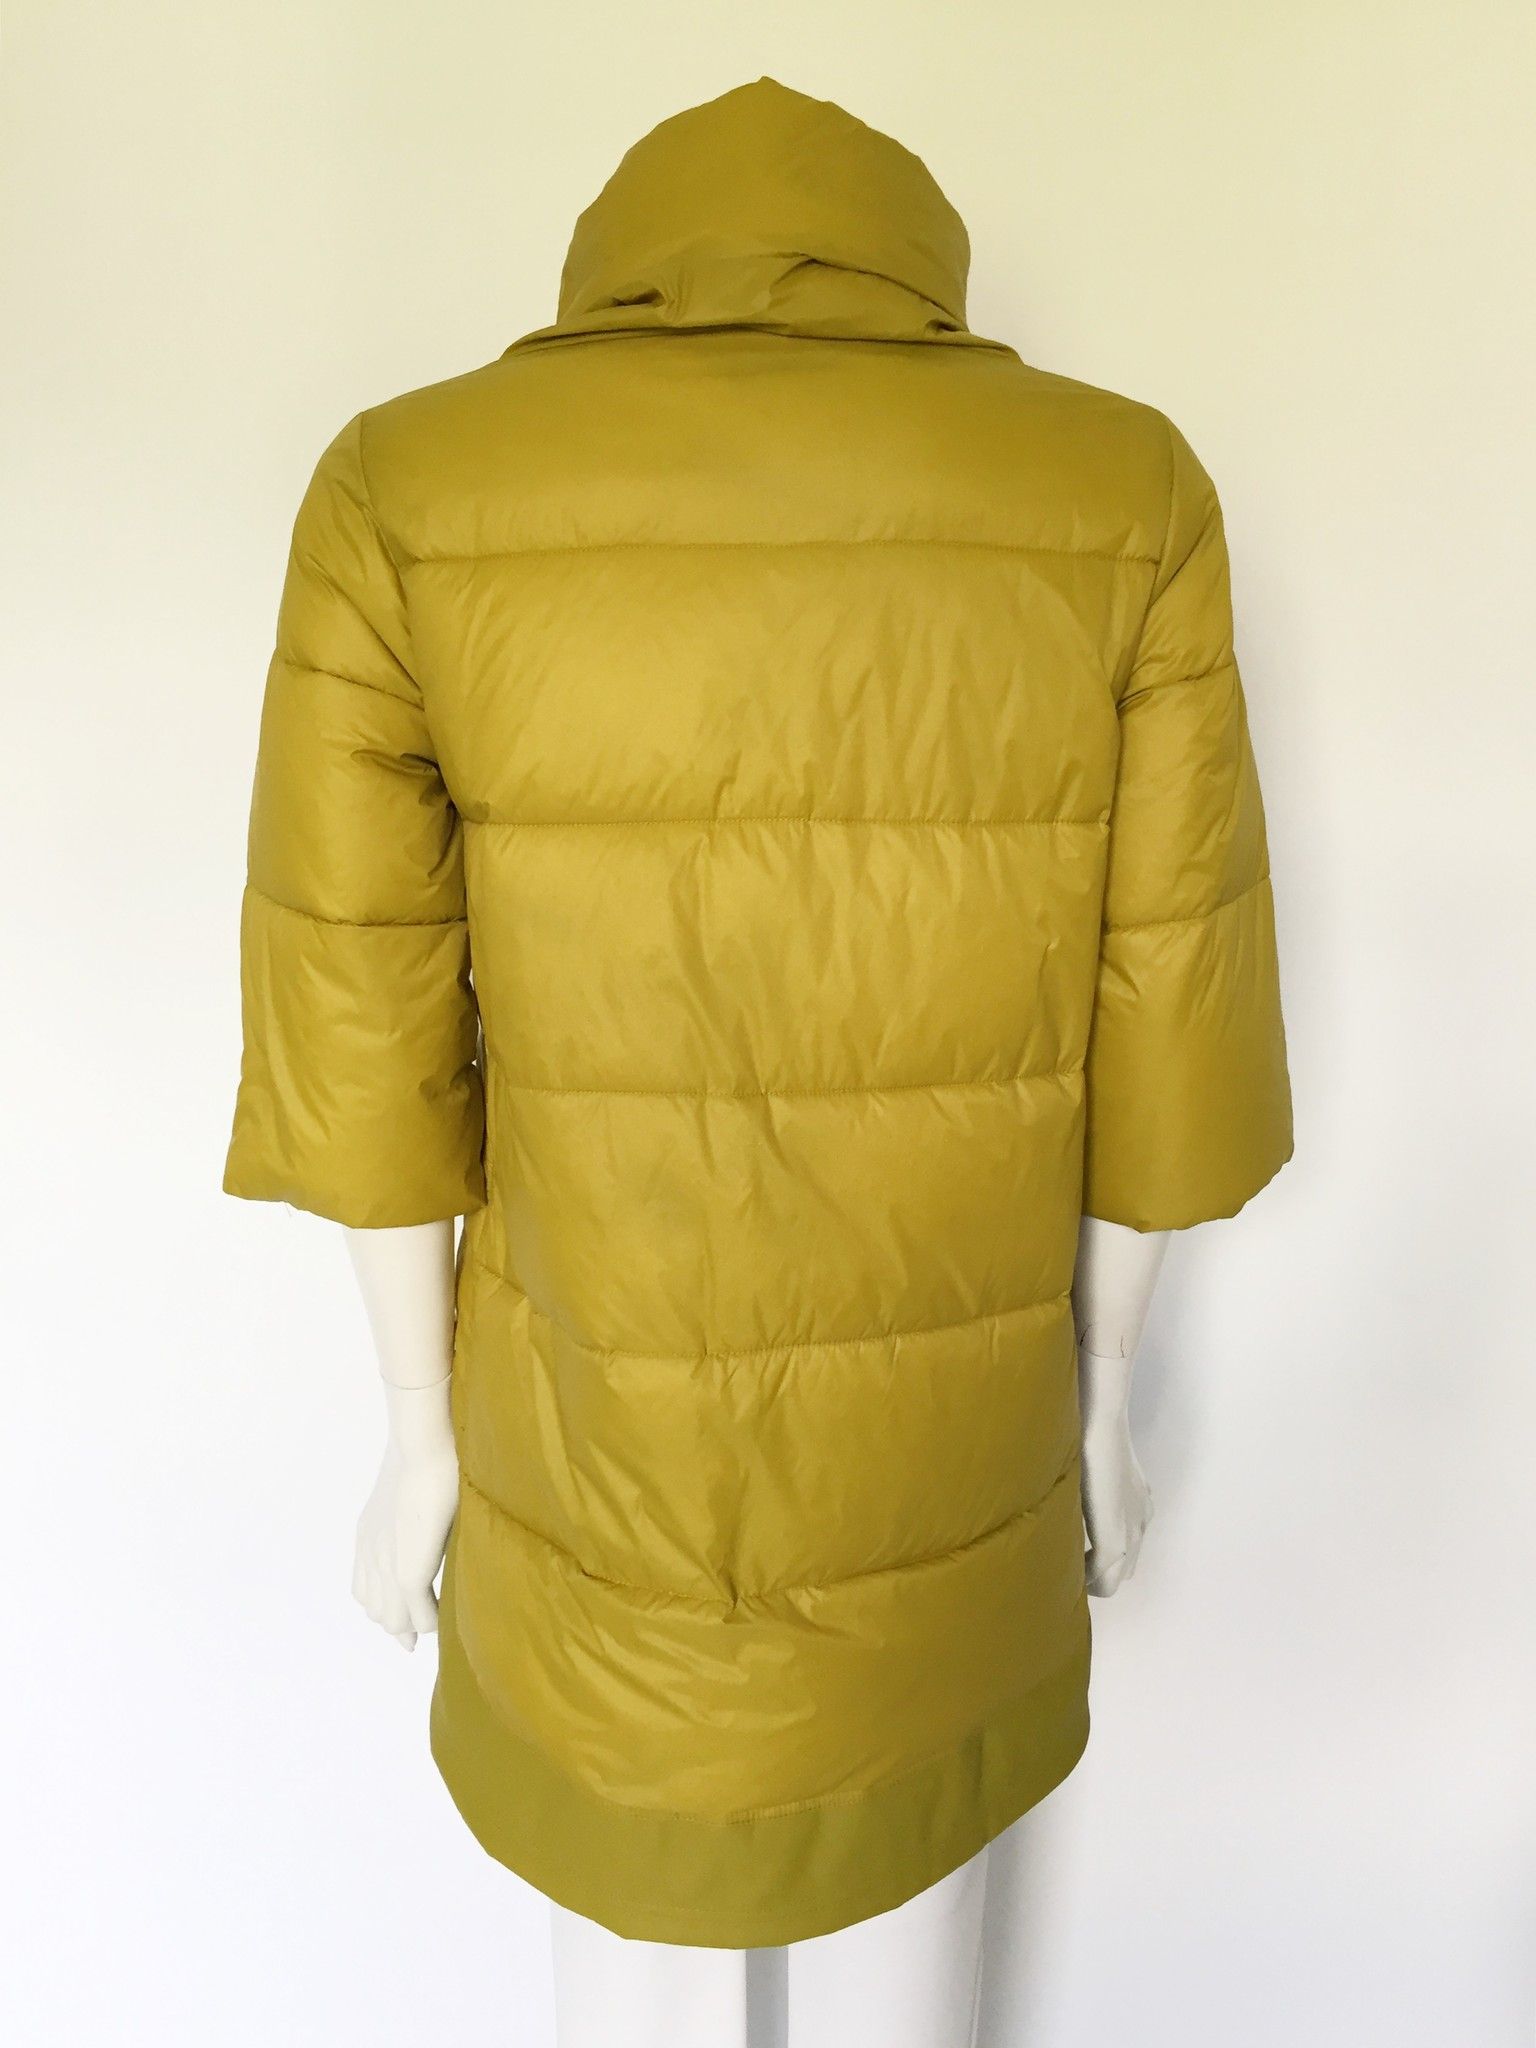 LadyBug 3/4 Sleeve Overcoat Cod.Q0150